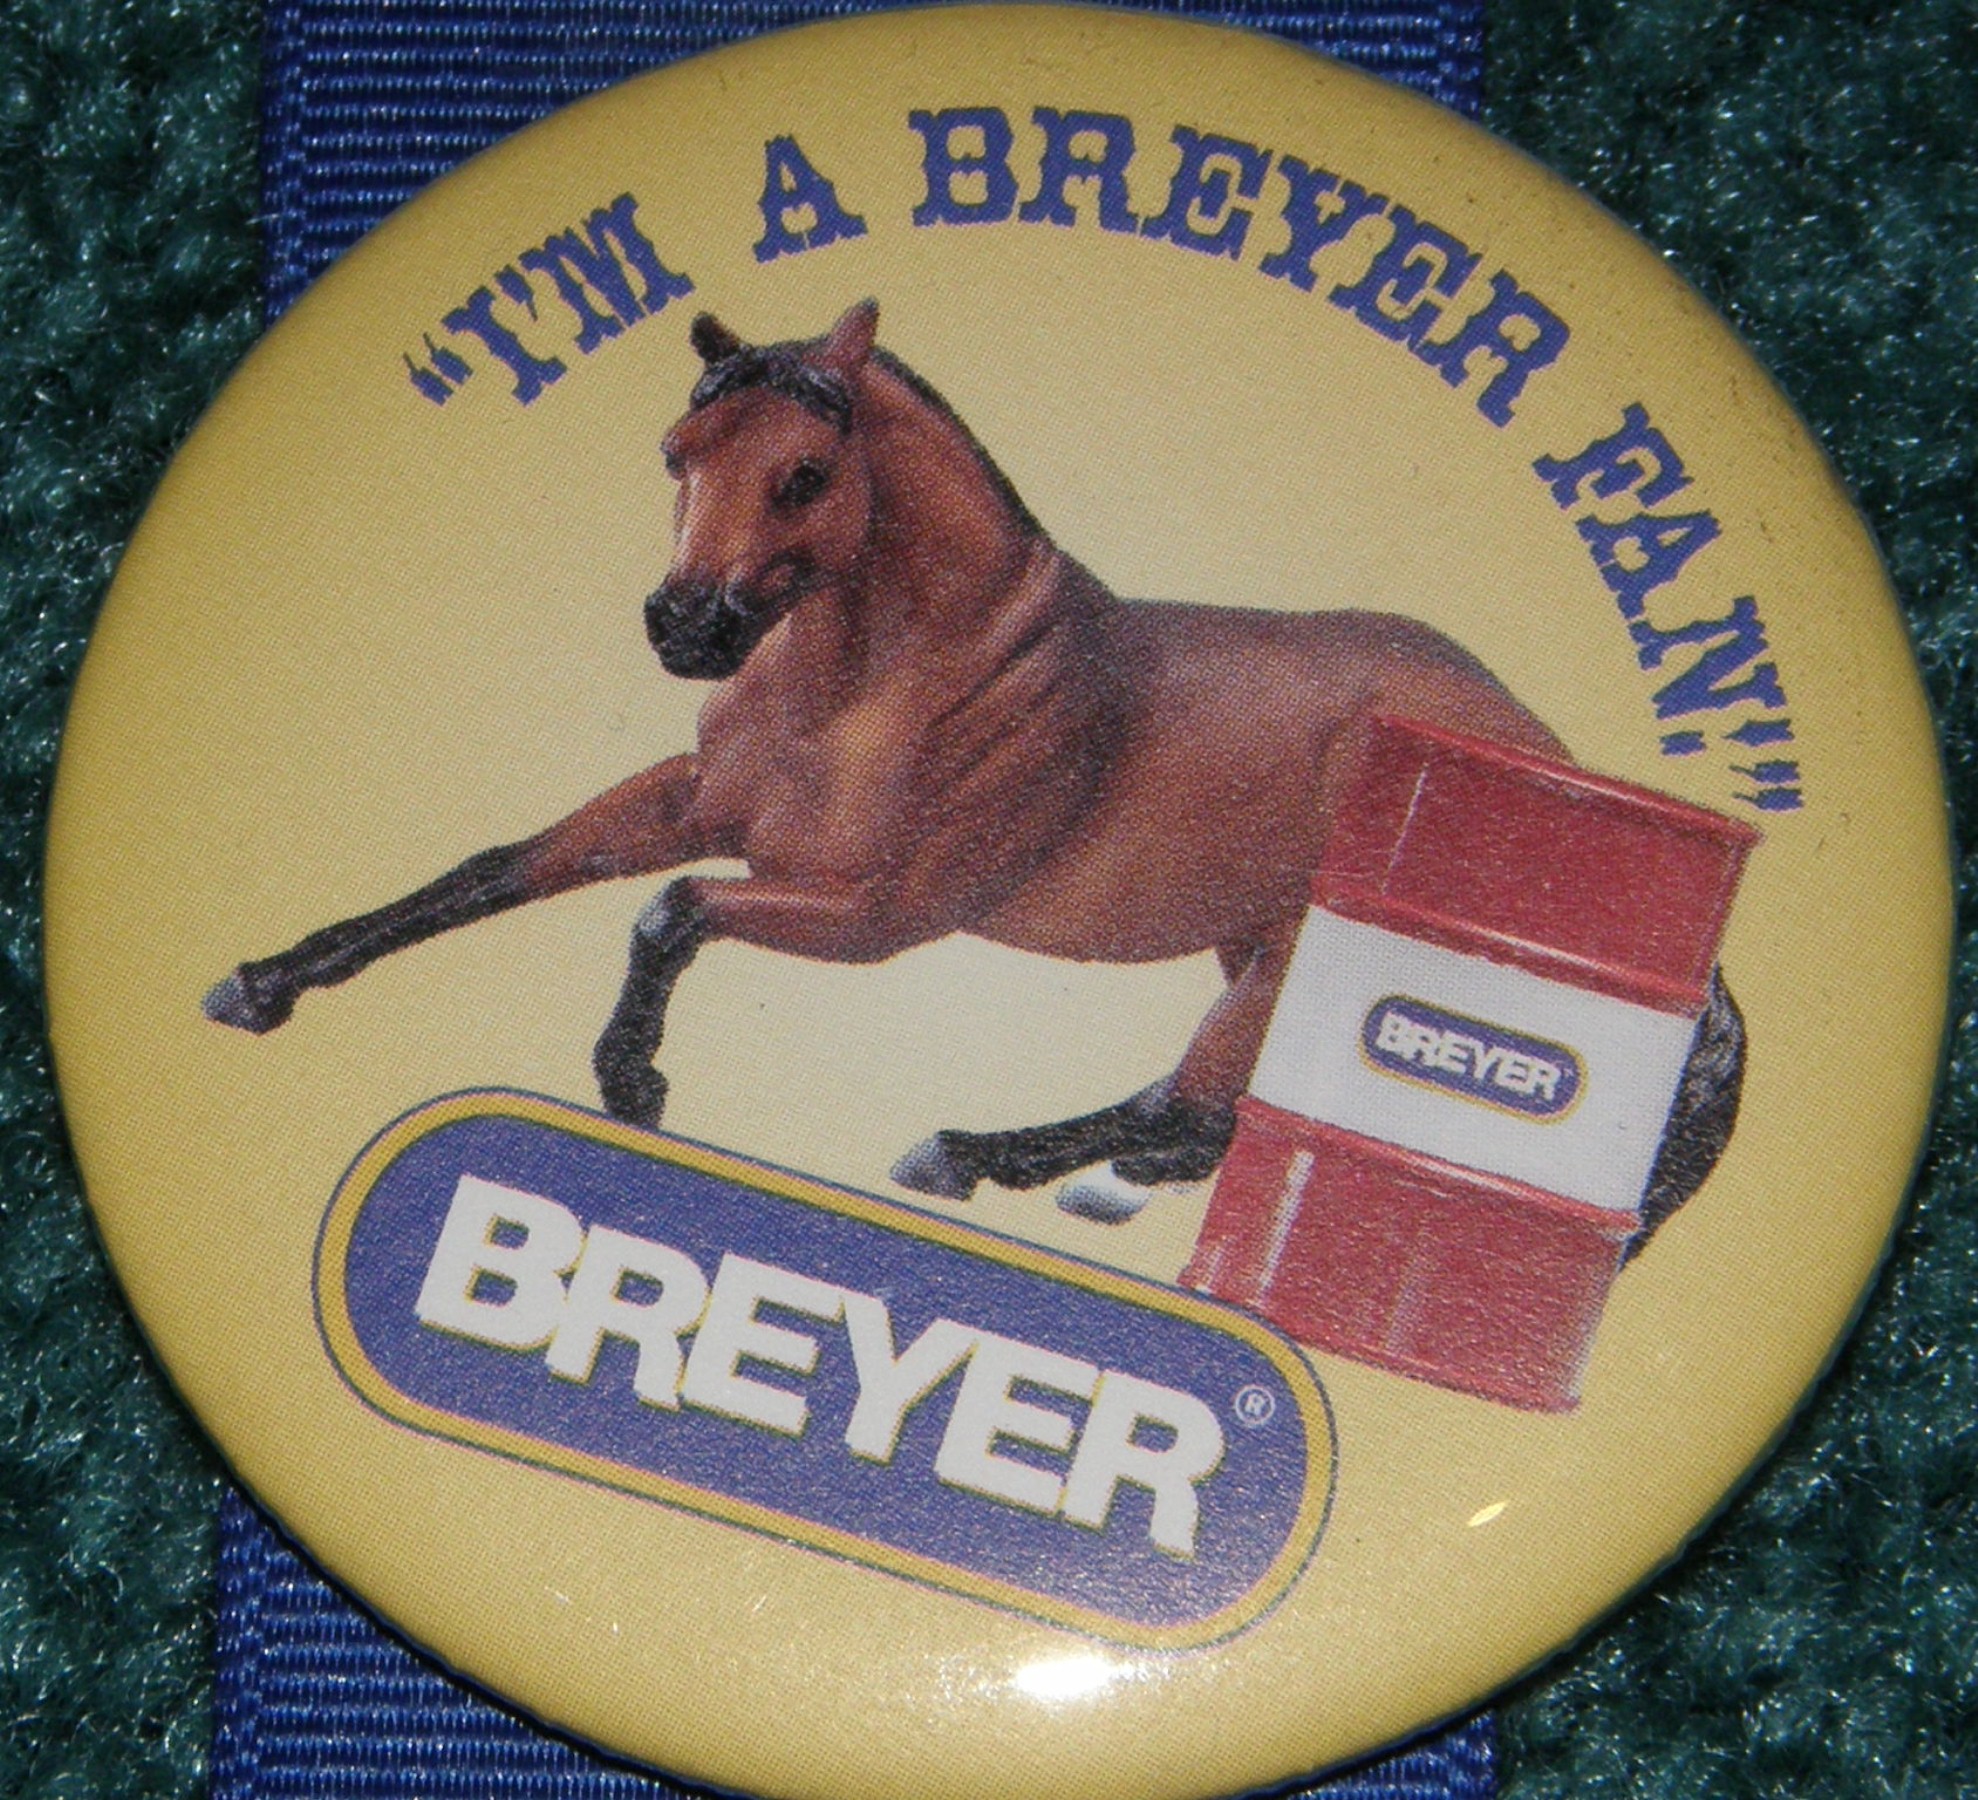 Lot of 2 Breyer Horses Pins/Buttons “I’m A Breyer Fan” Yellow/Blue 